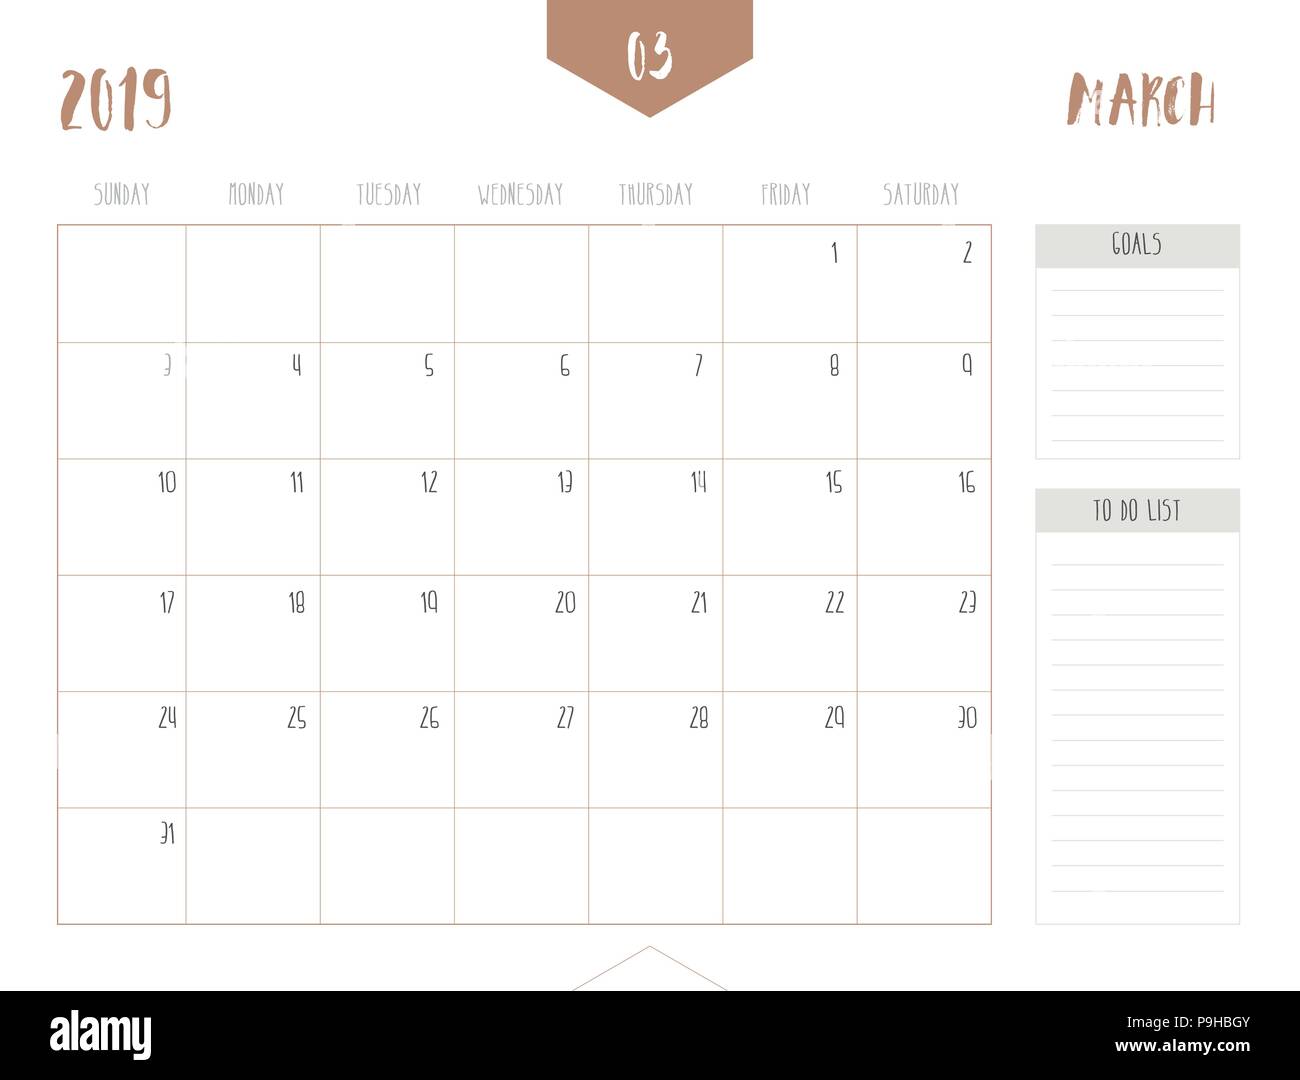 Vettore del calendario 2019 ( marzo ) in semplice pulire il tavolo stile con obiettivi e fare casella di elenco; la piena dimensione 21 x 16 cm; la settimana inizia la domenica Illustrazione Vettoriale